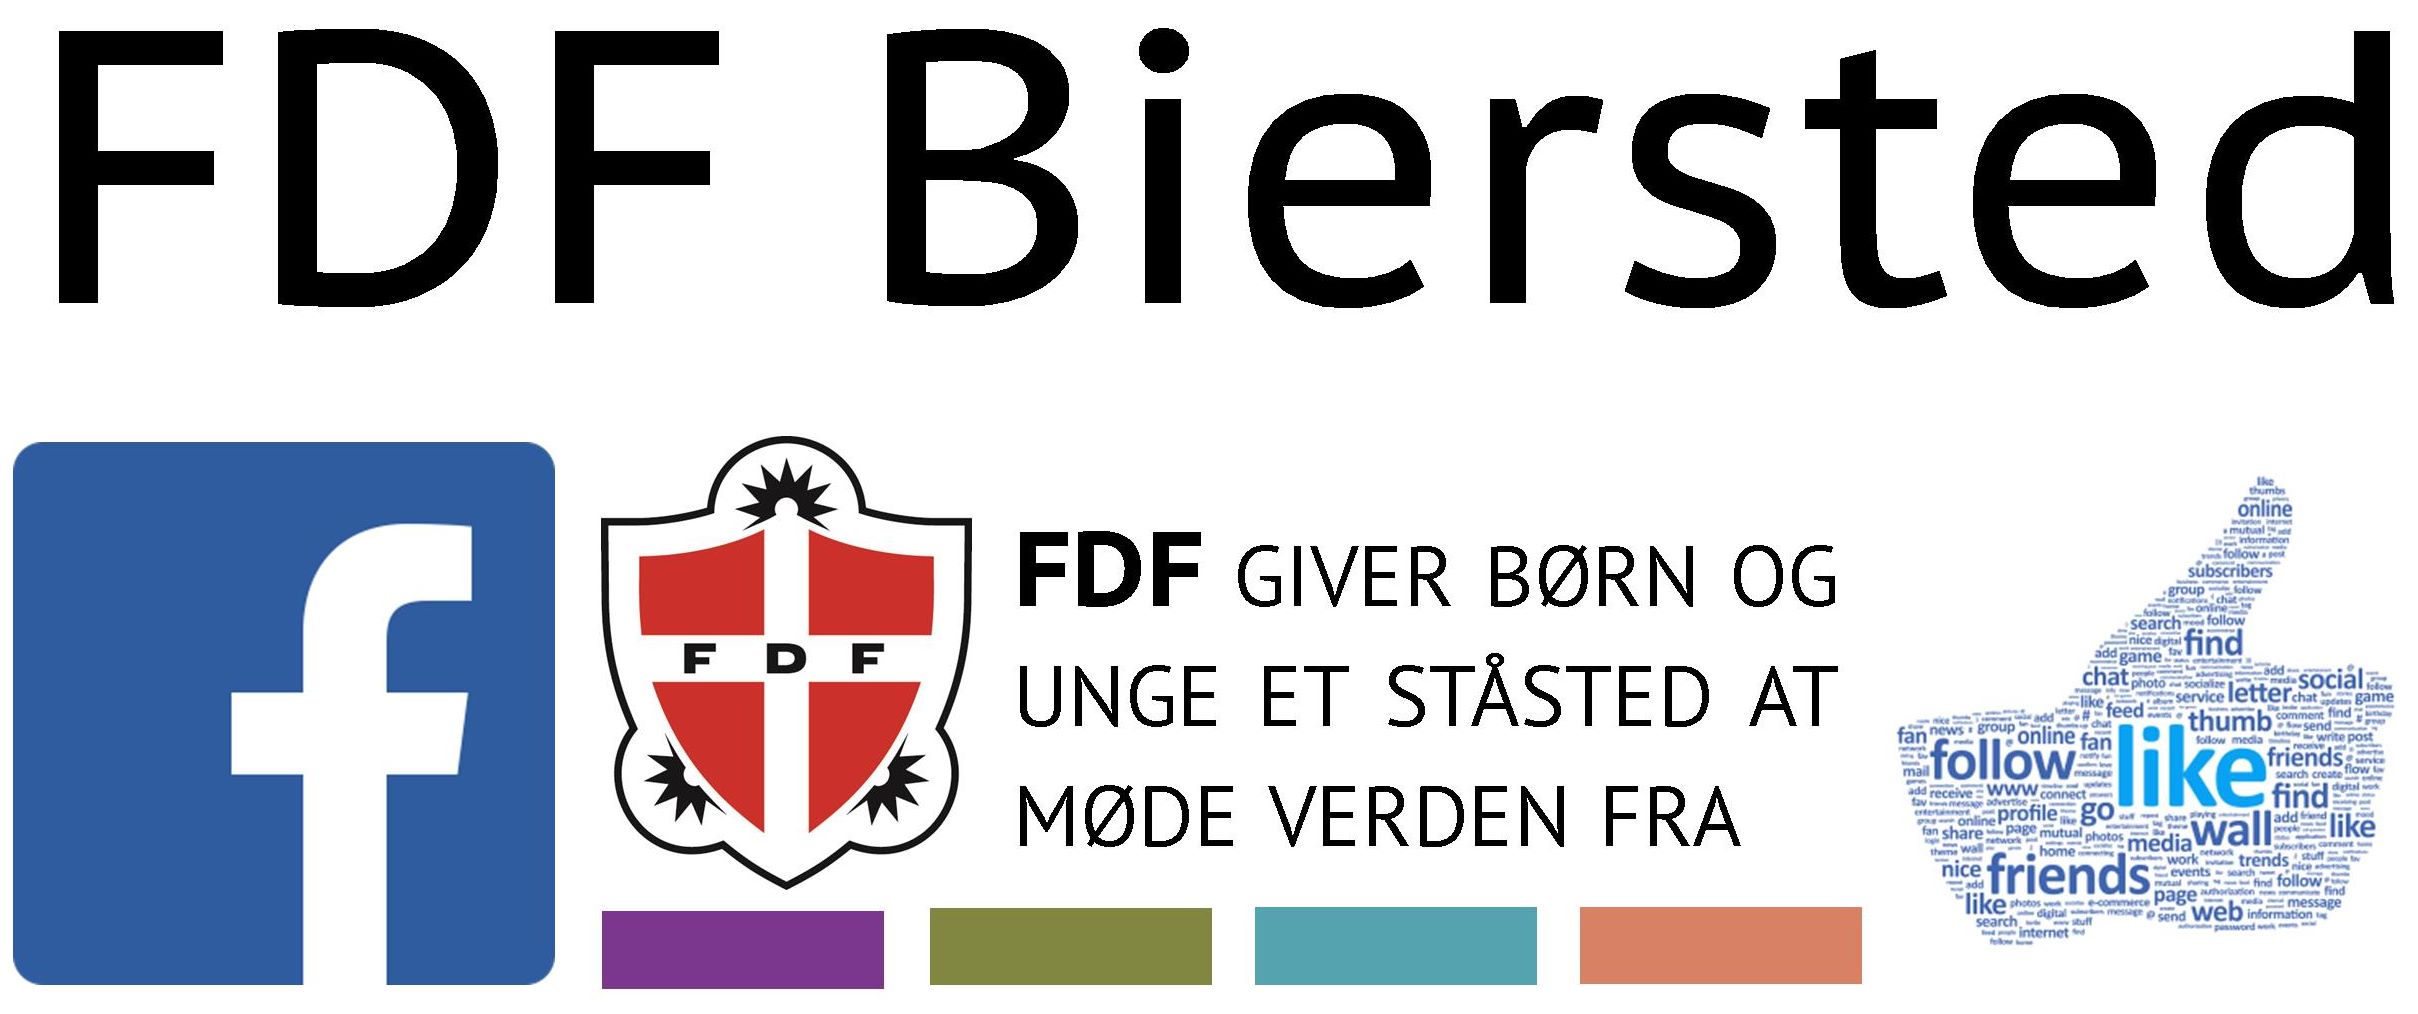 FDF Biersted link